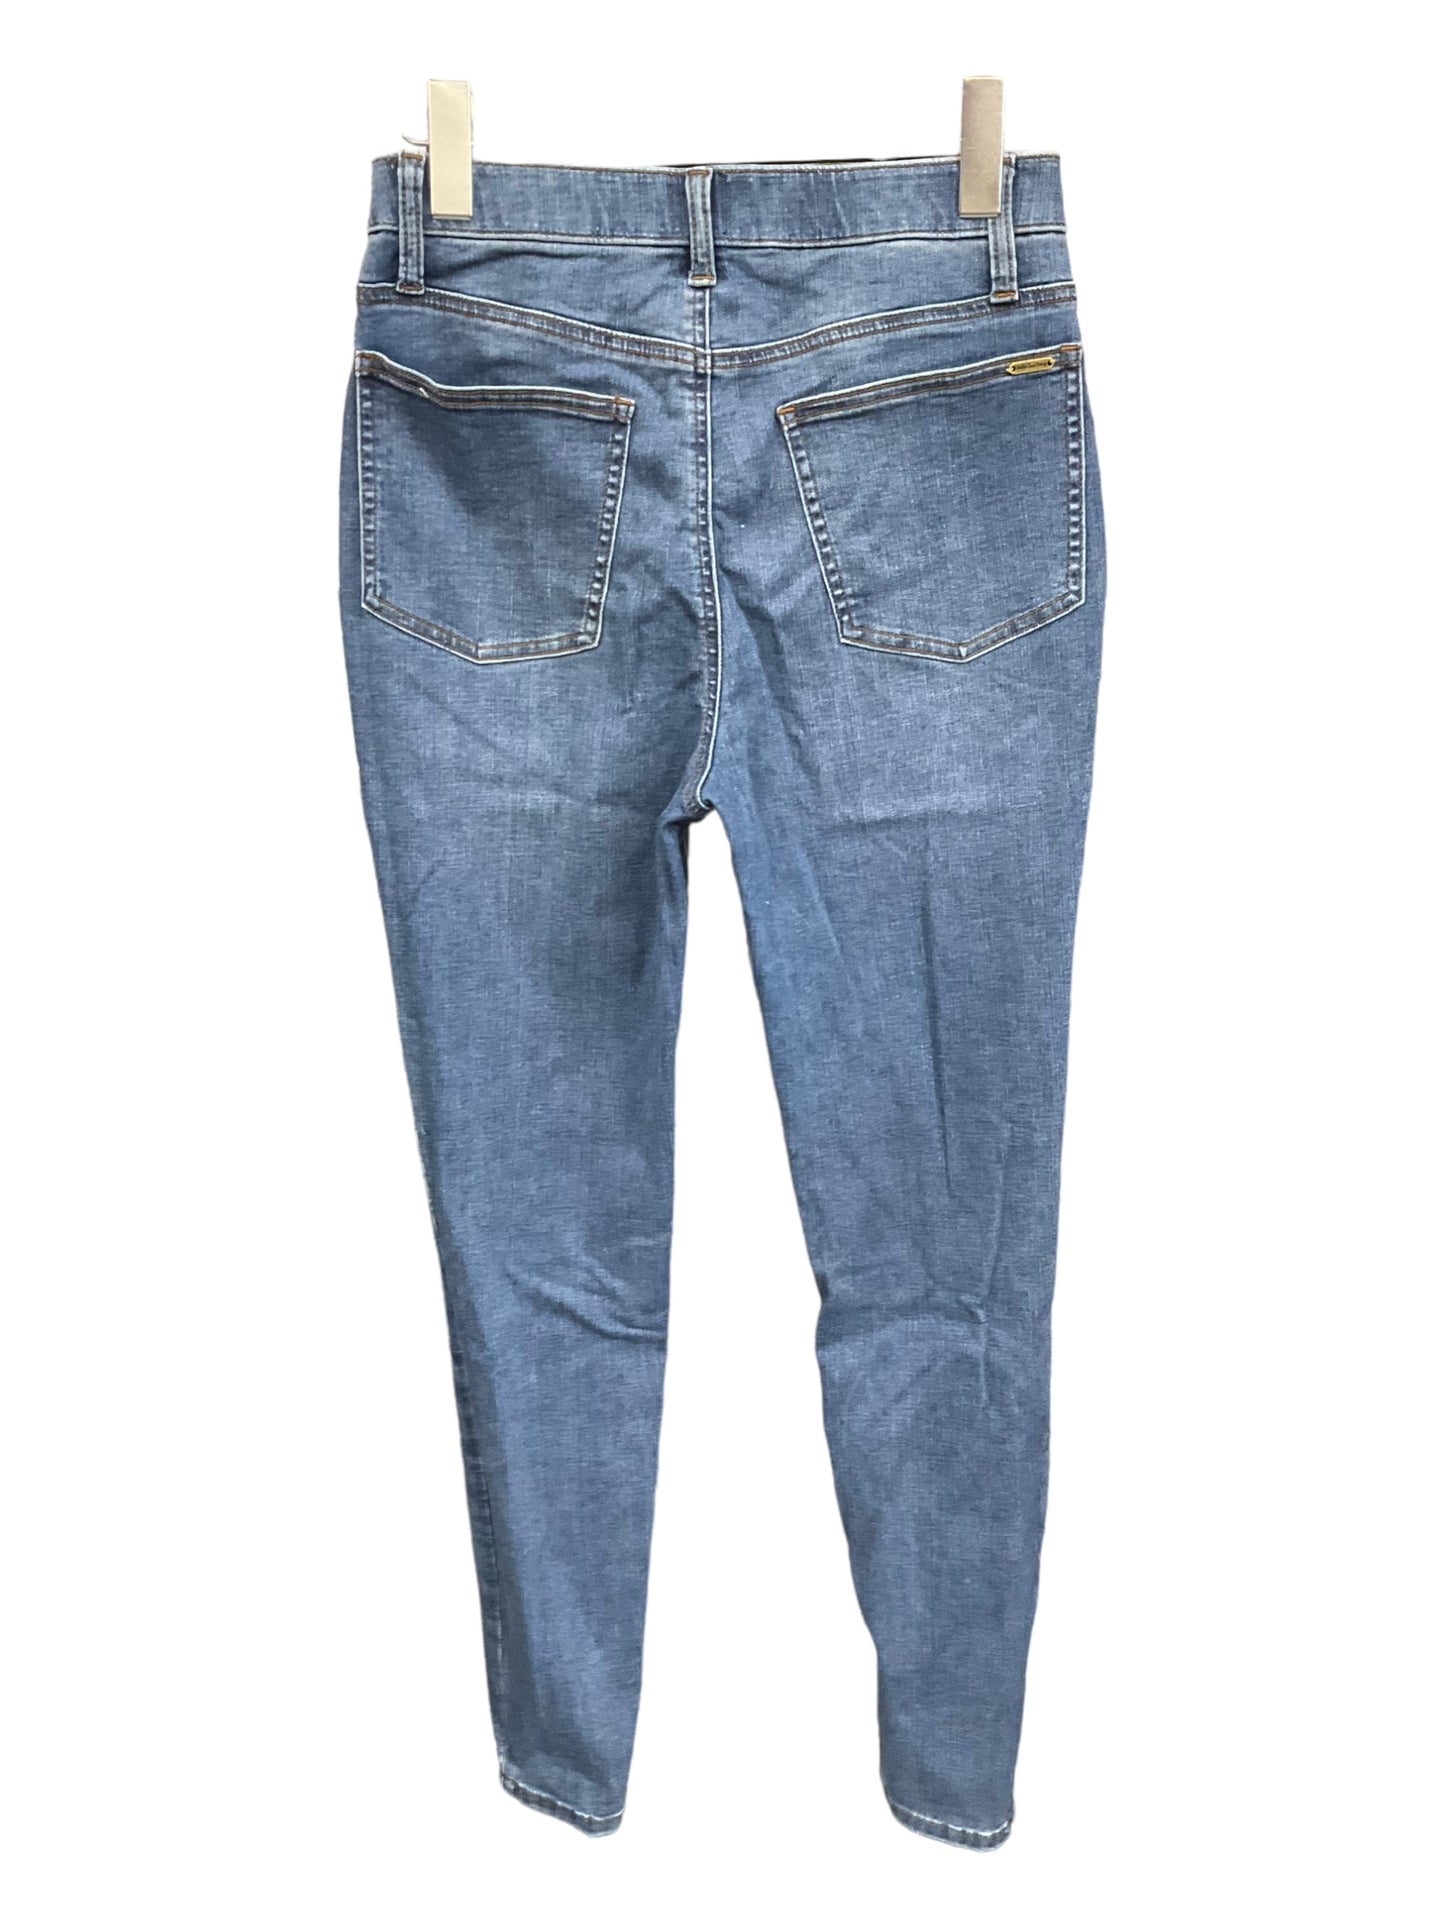 Jeans Skinny By Matilda Jane  Size: 4